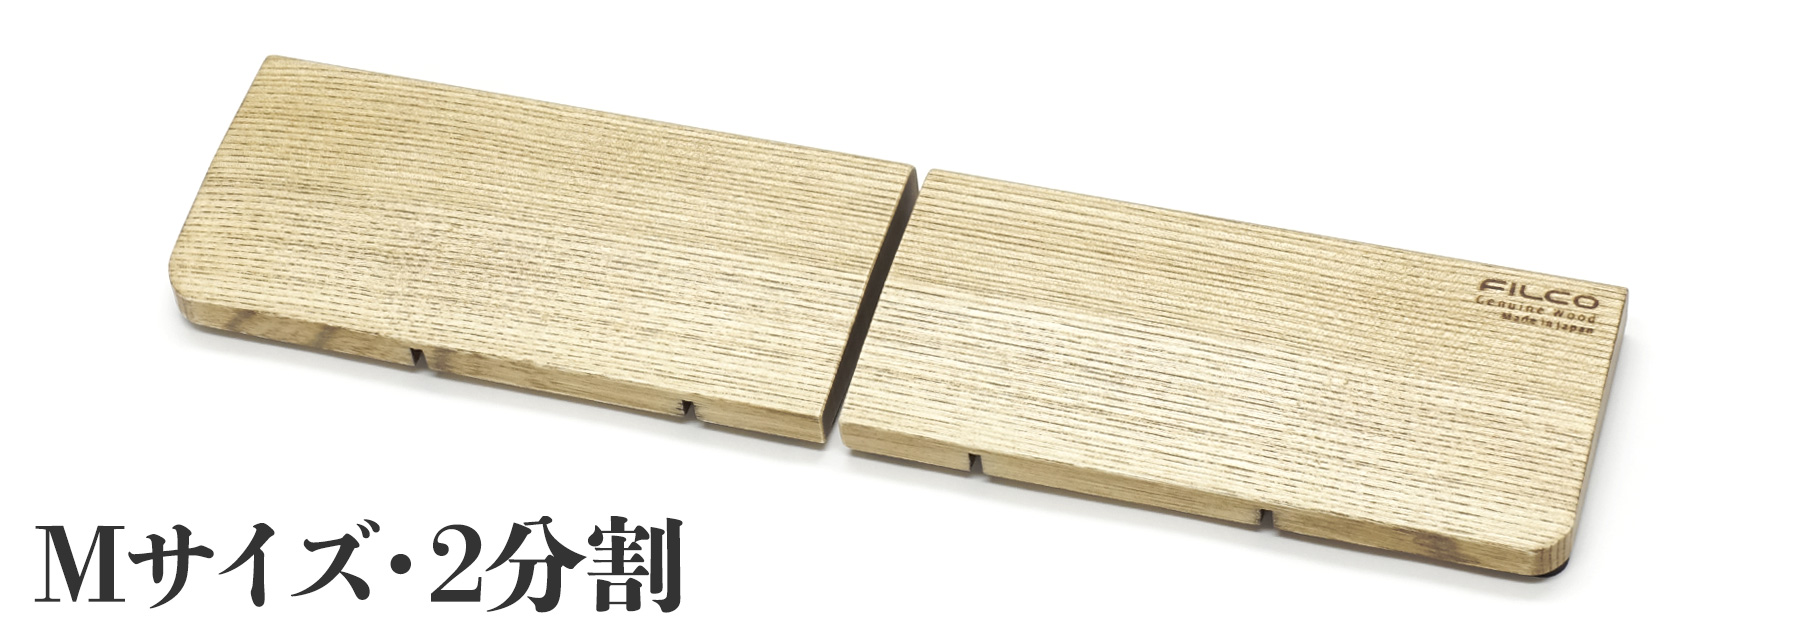 【北海道産天然木】FILCO Genuine Wood Wrist Rest Ｍ size 分離型(2分割)